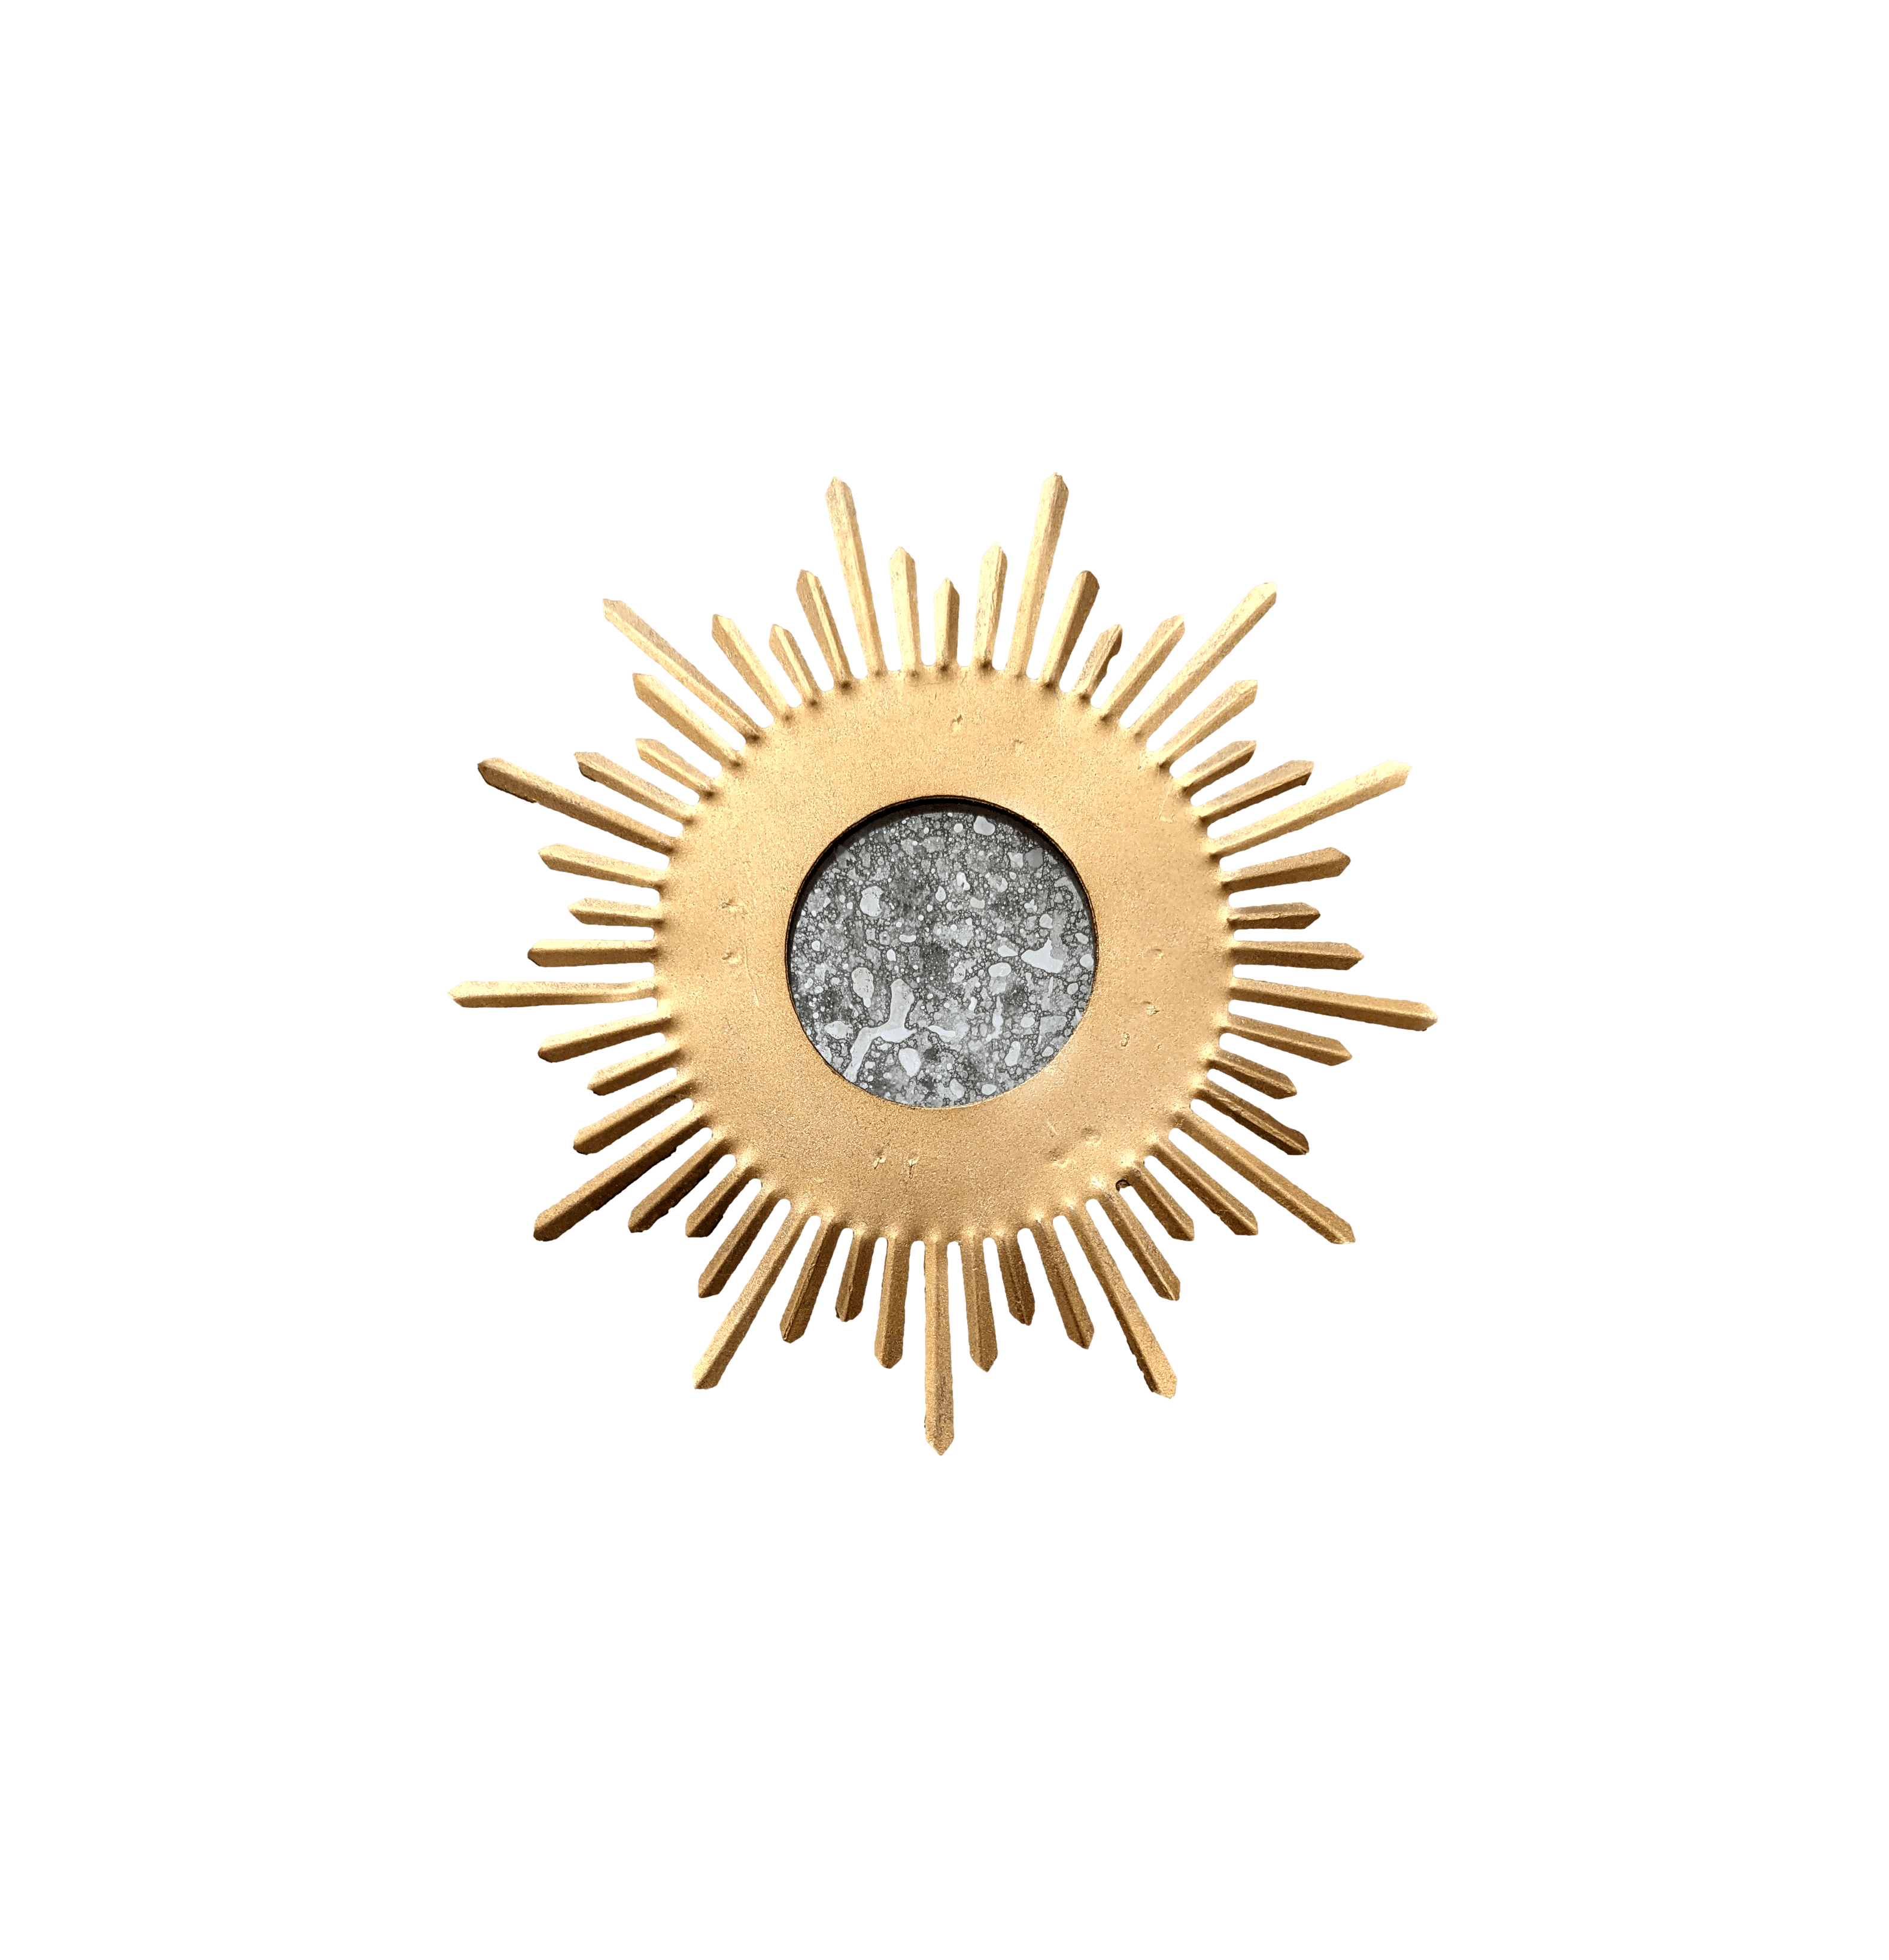 Sun Mirror